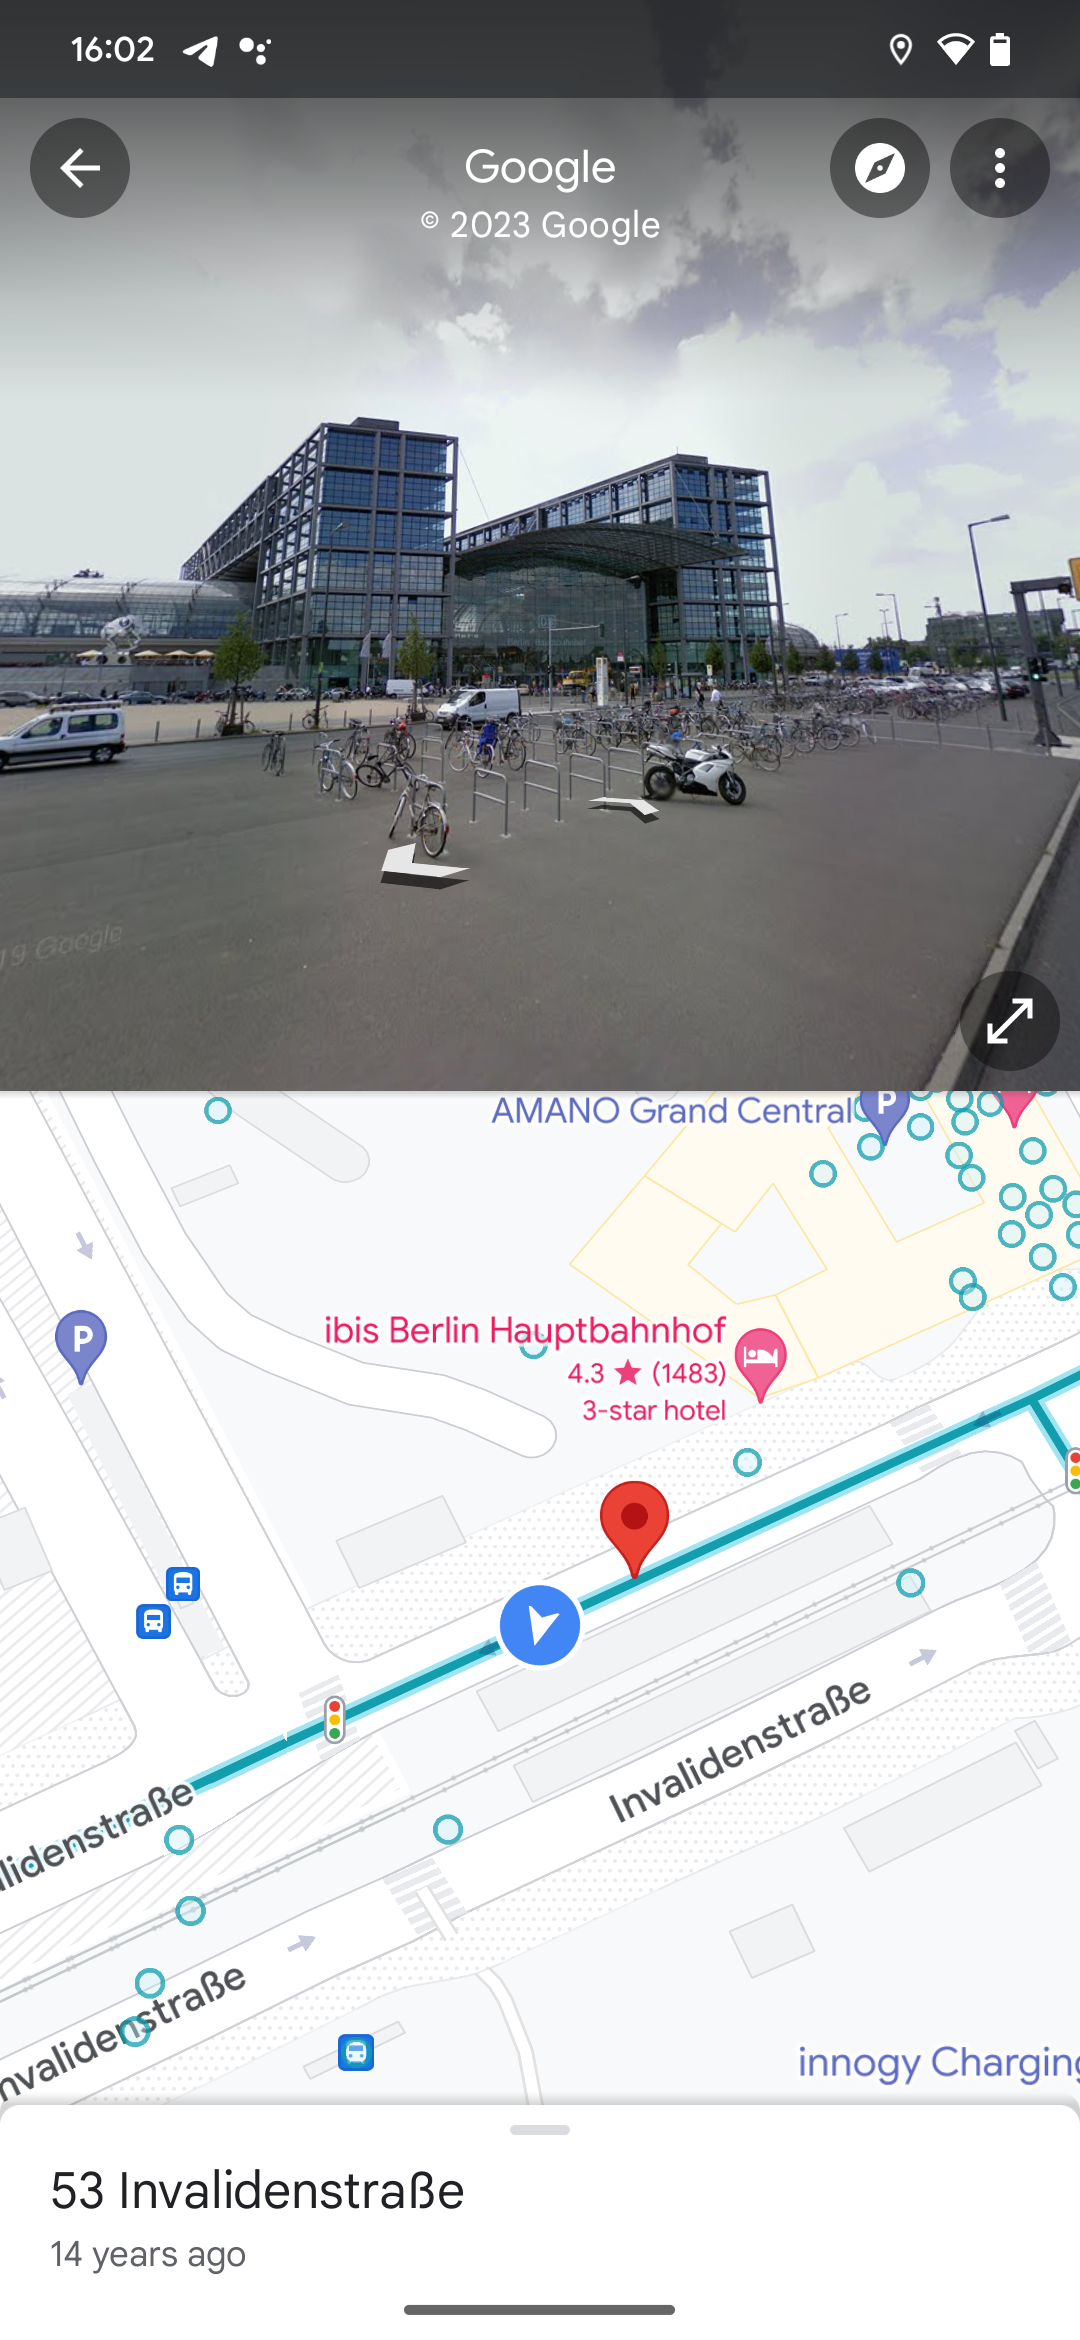 Fitur Google Maps Street View menunjukkan gambar kuno stasiun pusat Berlin tanpa stasiun trem yang sudah lama dibangun di depannya